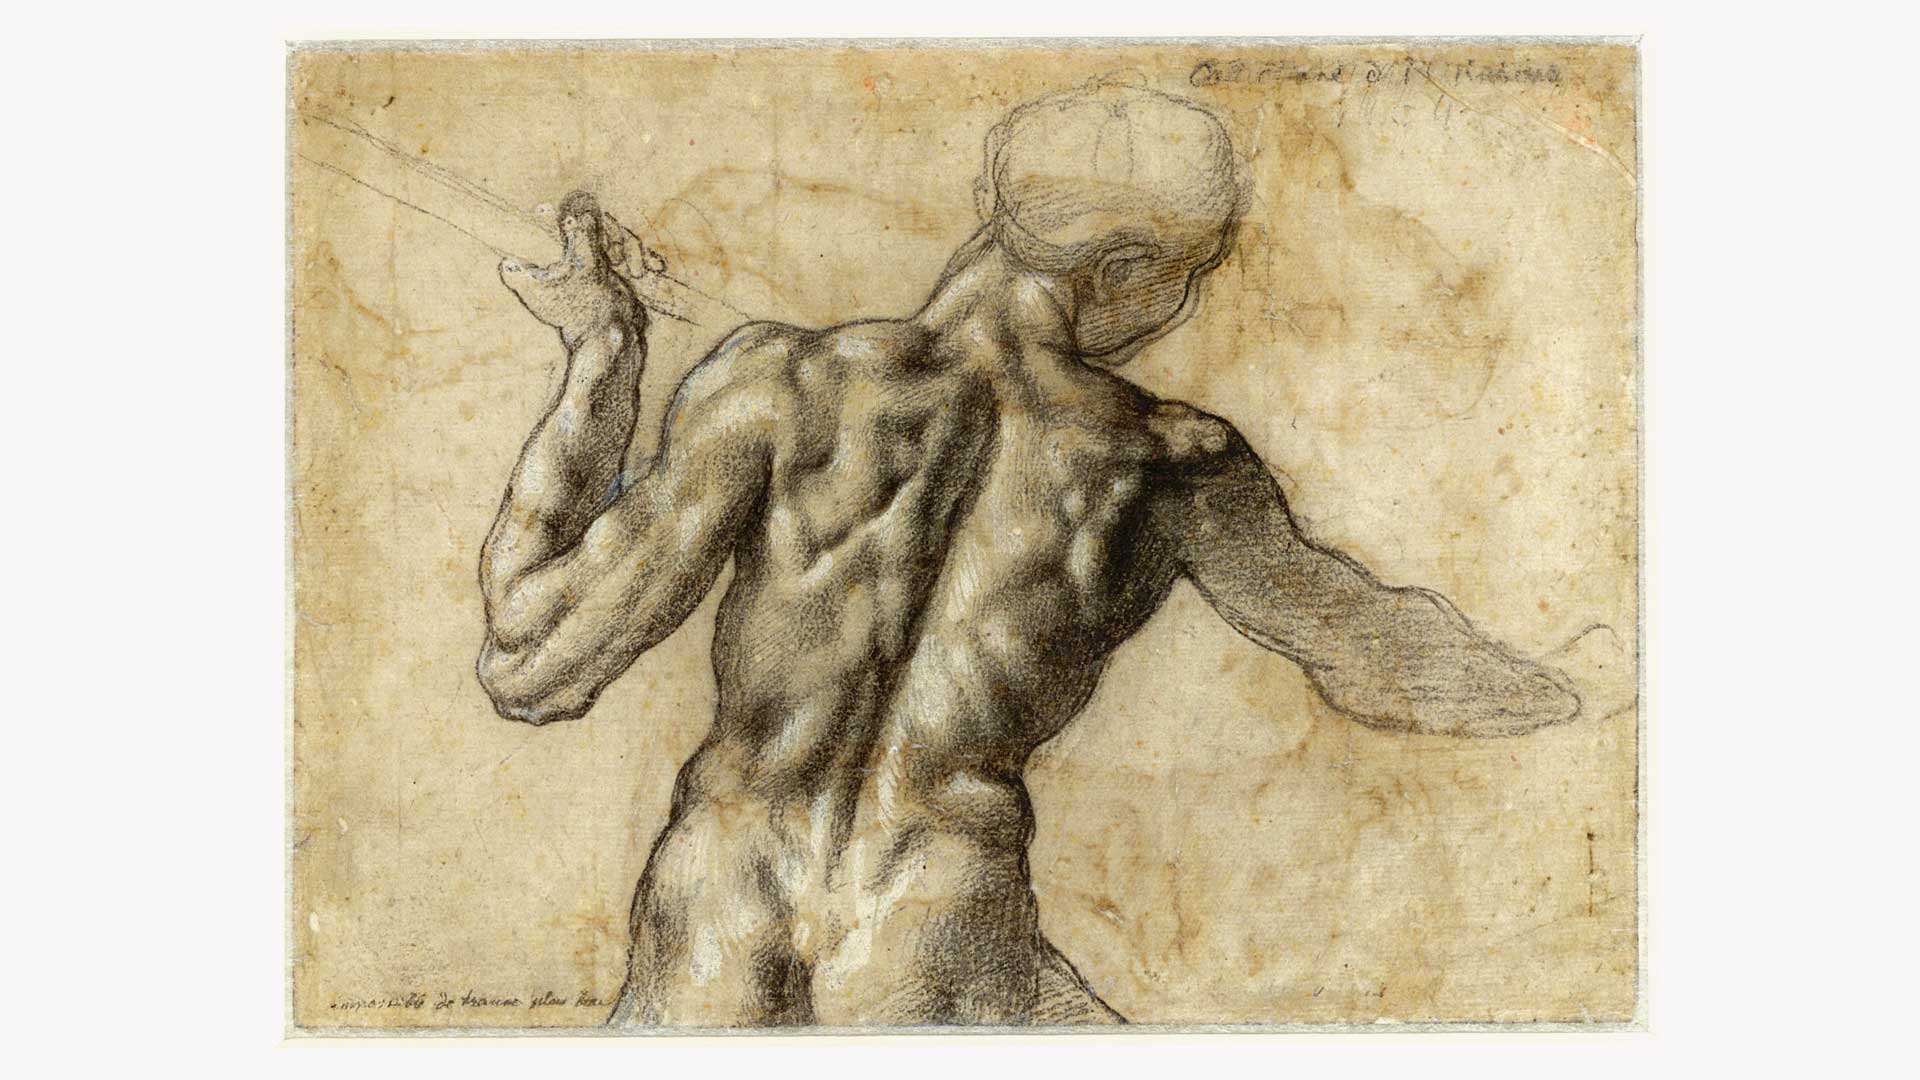 L'età di Michelangelo - I capolavori dell'Albertiniana